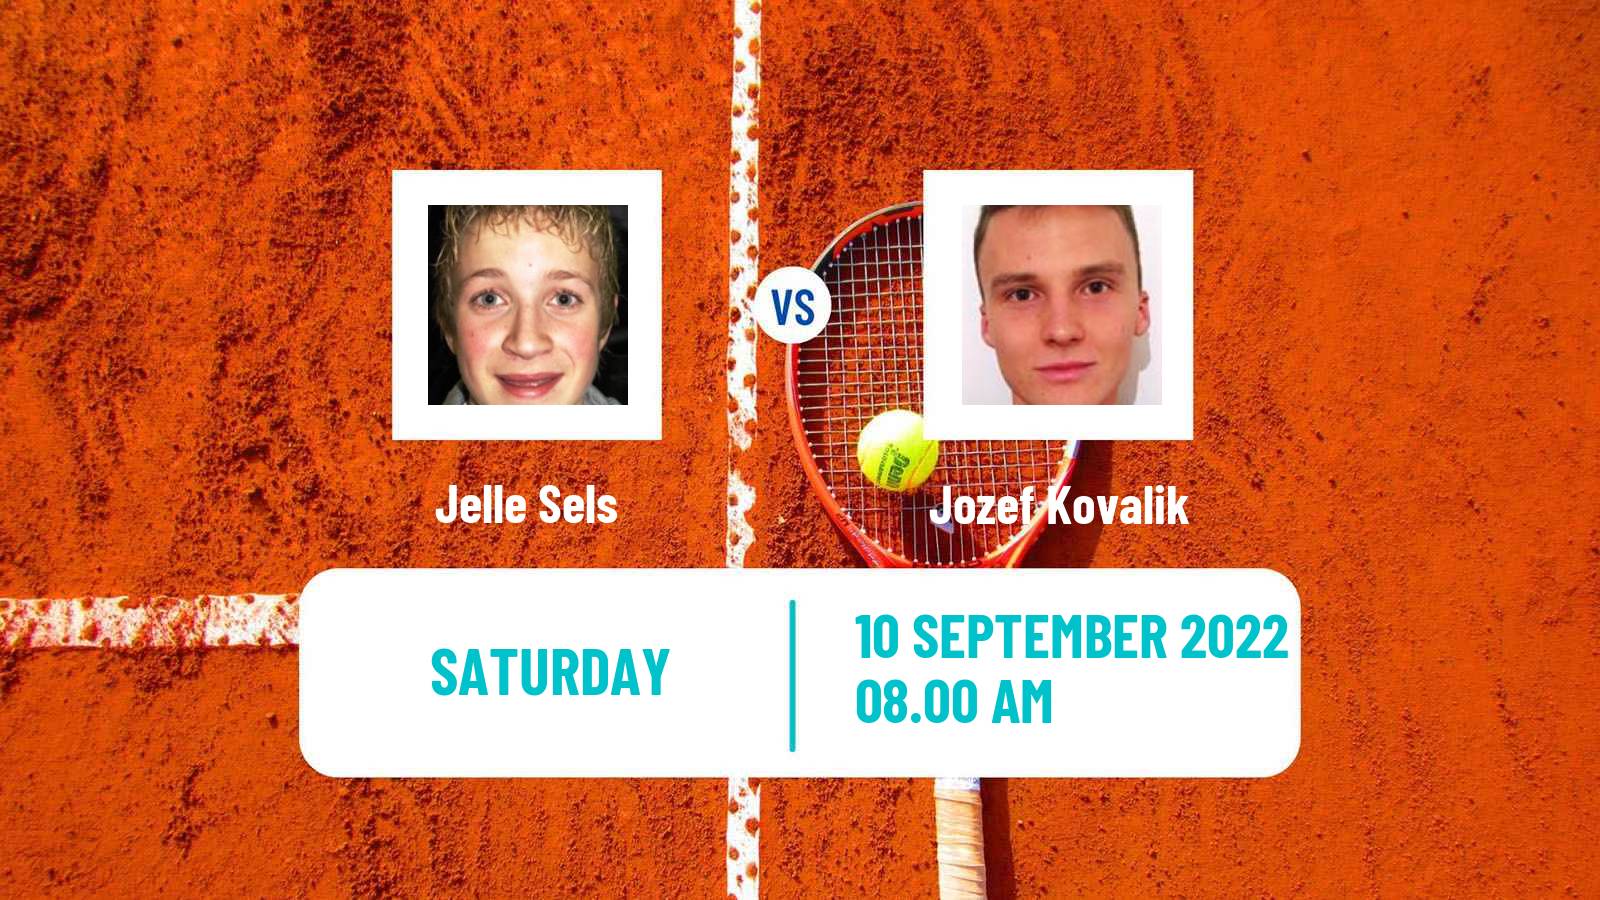 Tennis ATP Challenger Jelle Sels - Jozef Kovalik